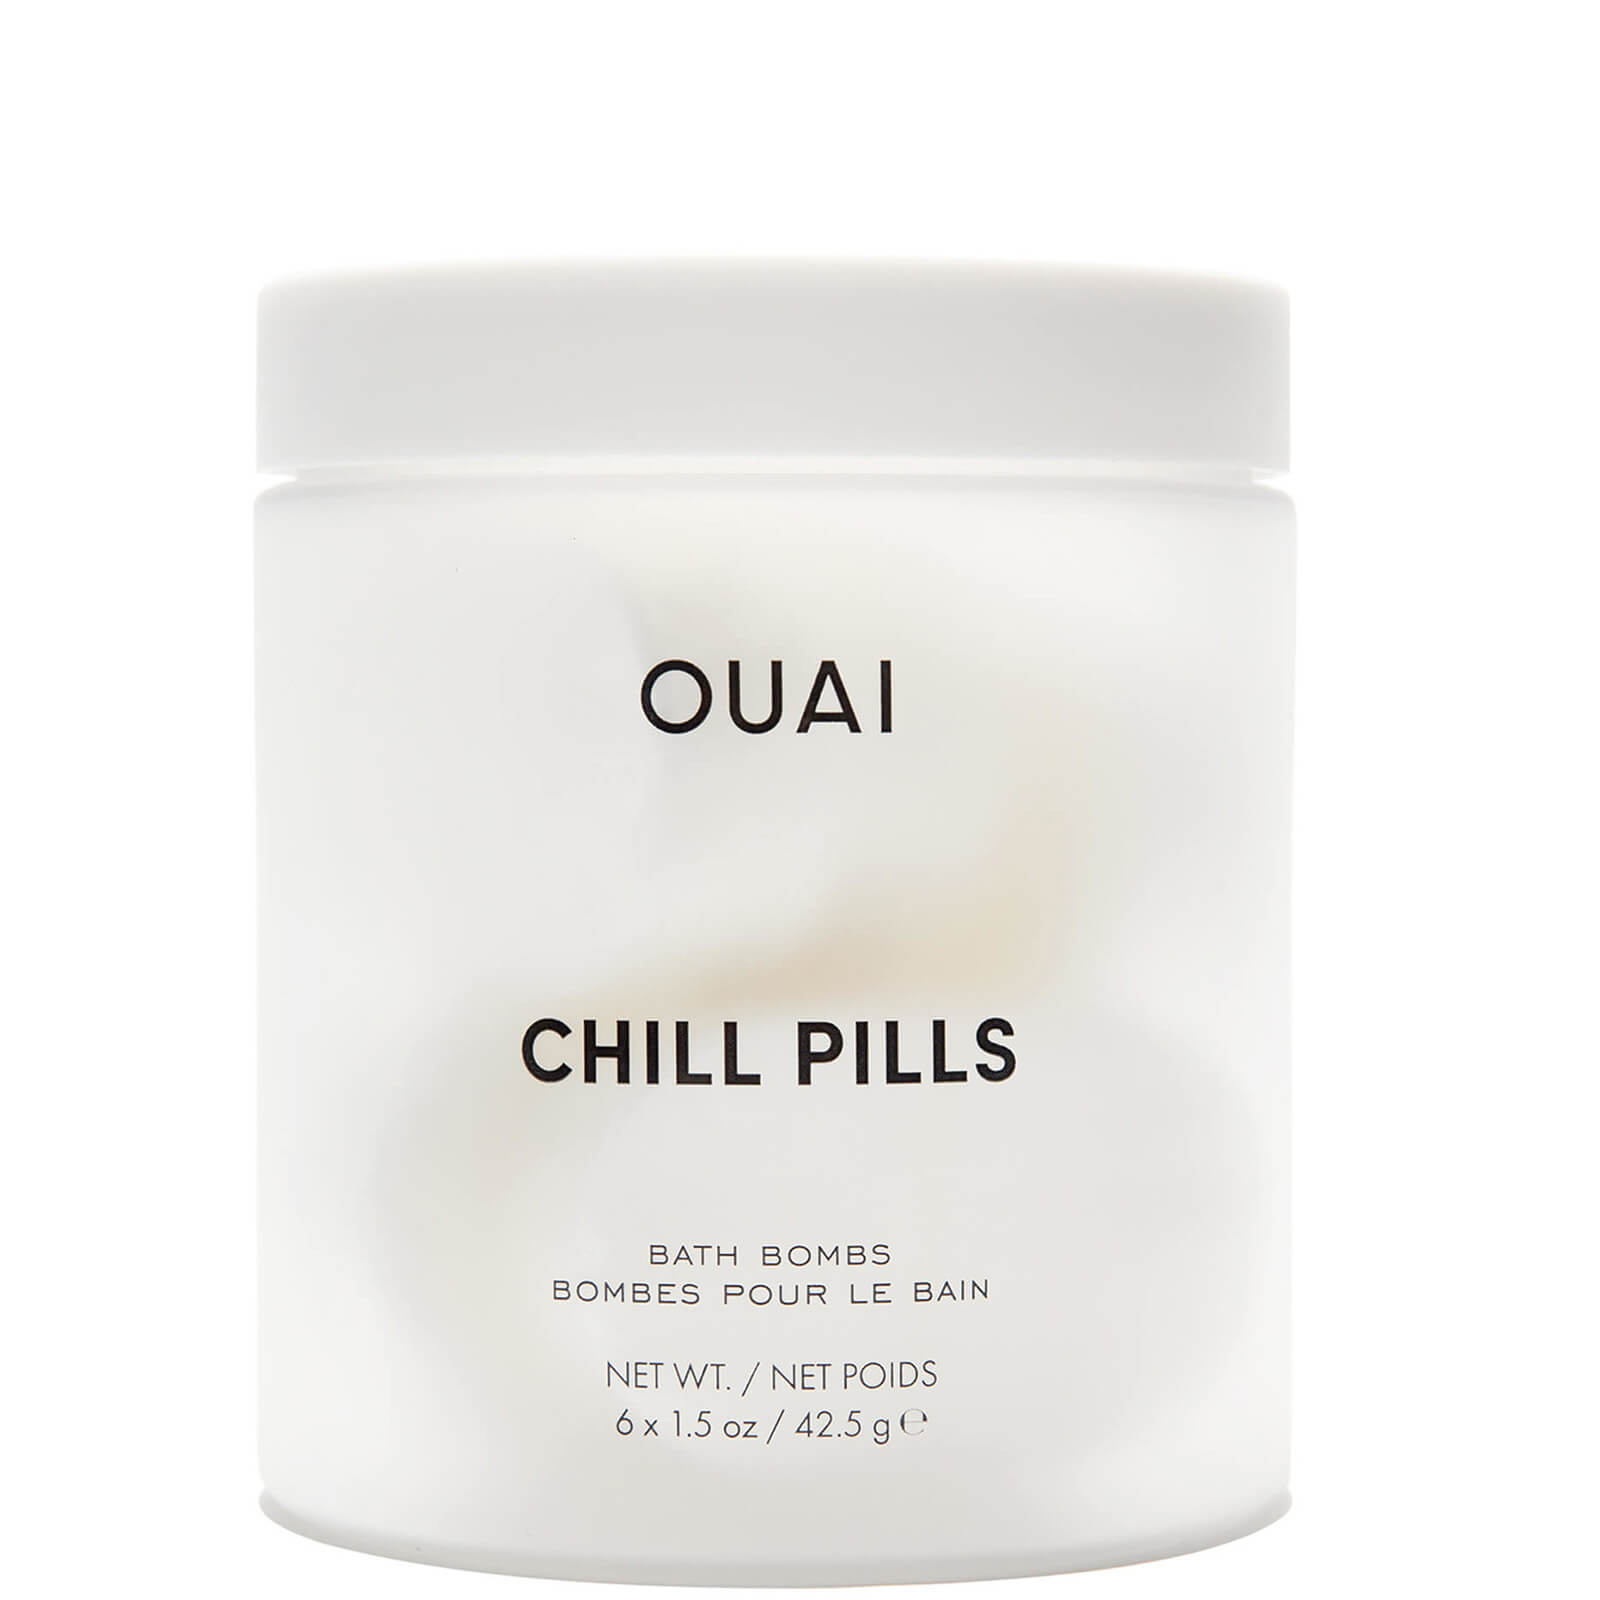 OUAI Chill Pills Bath Bombs 6 x 42.5g